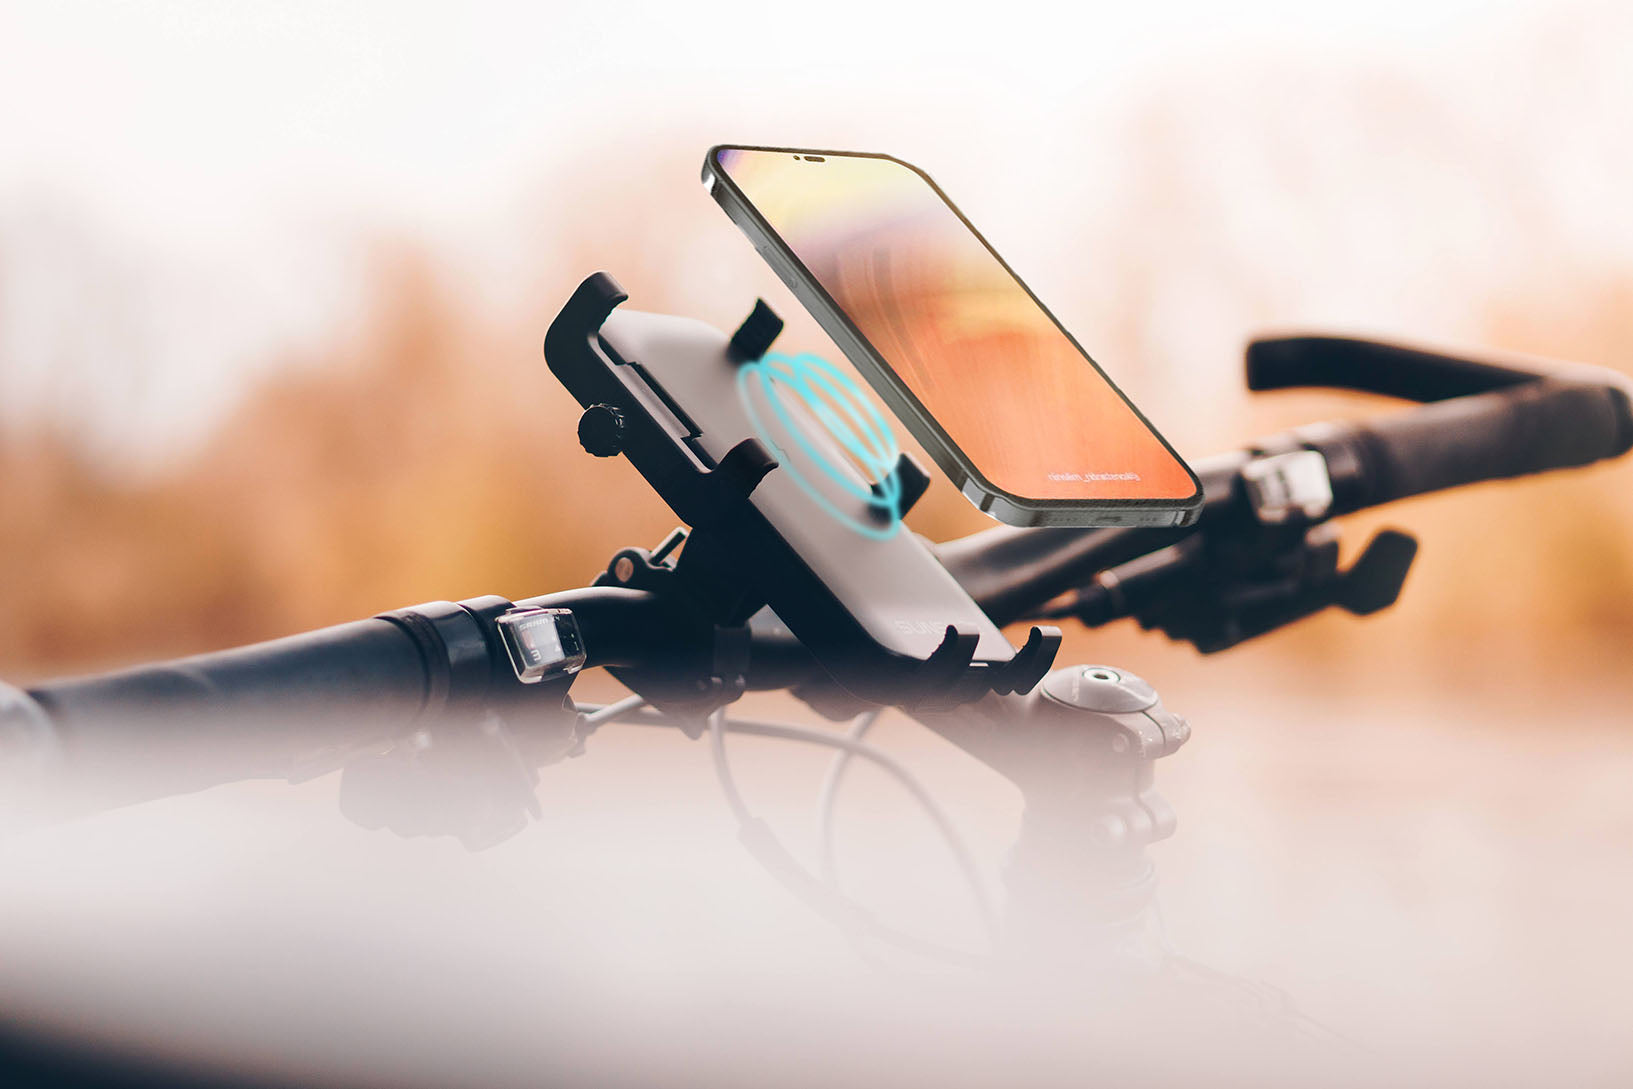 Handyhalterung am Fahrrad mit fliegendem Handy, kabelloses Aufladen